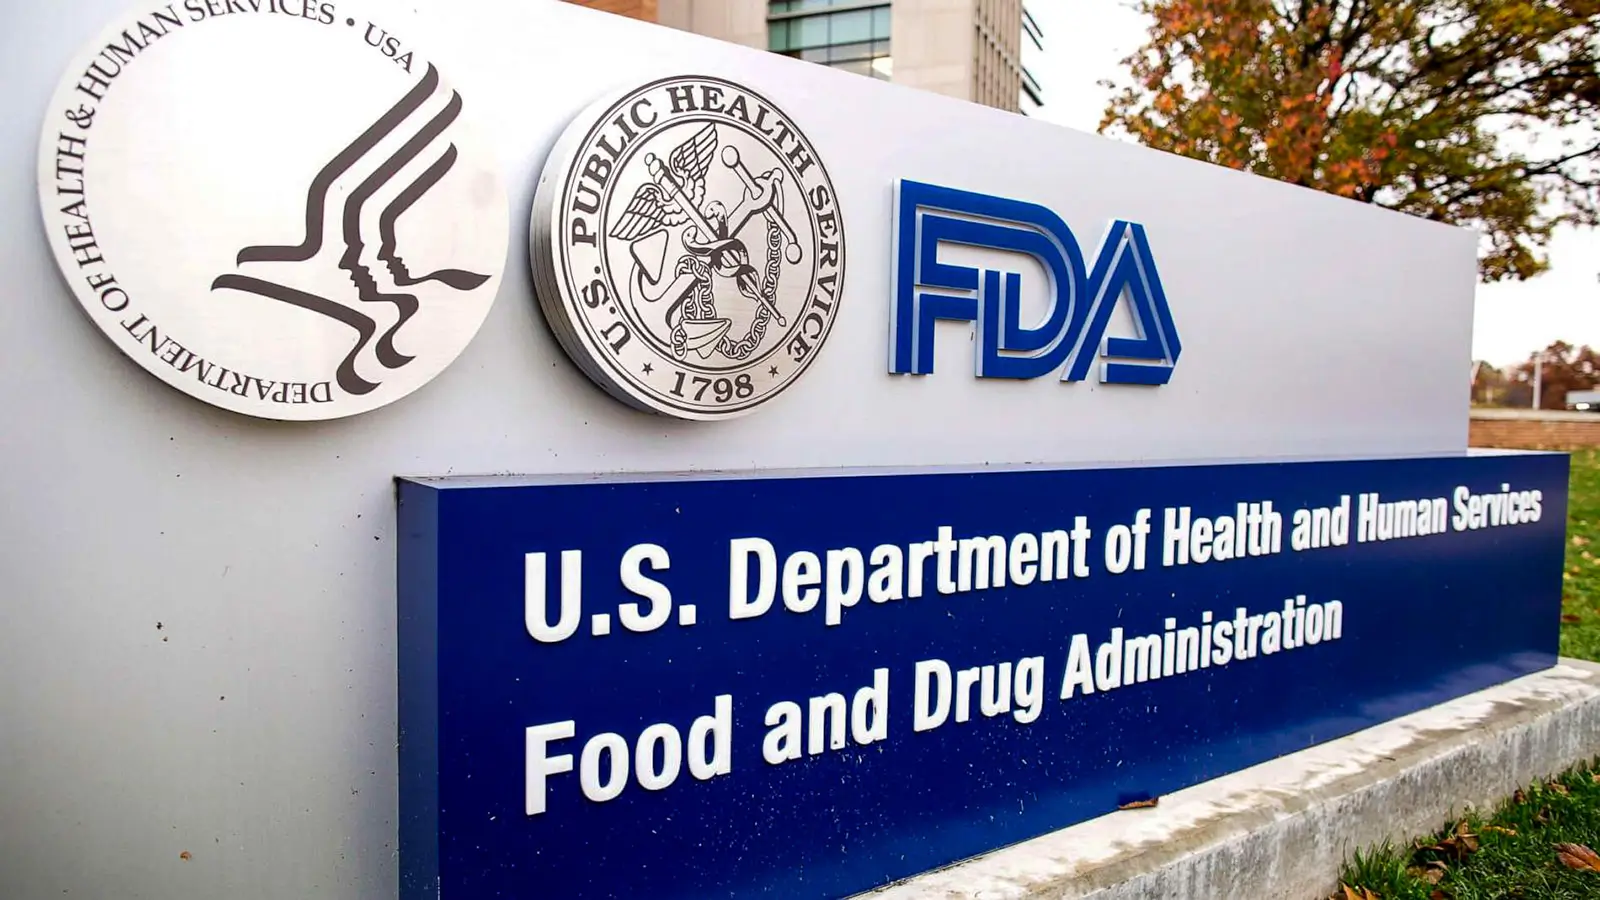 Medicina patenteada, Remédios à base de plantas e aprovação da FDA